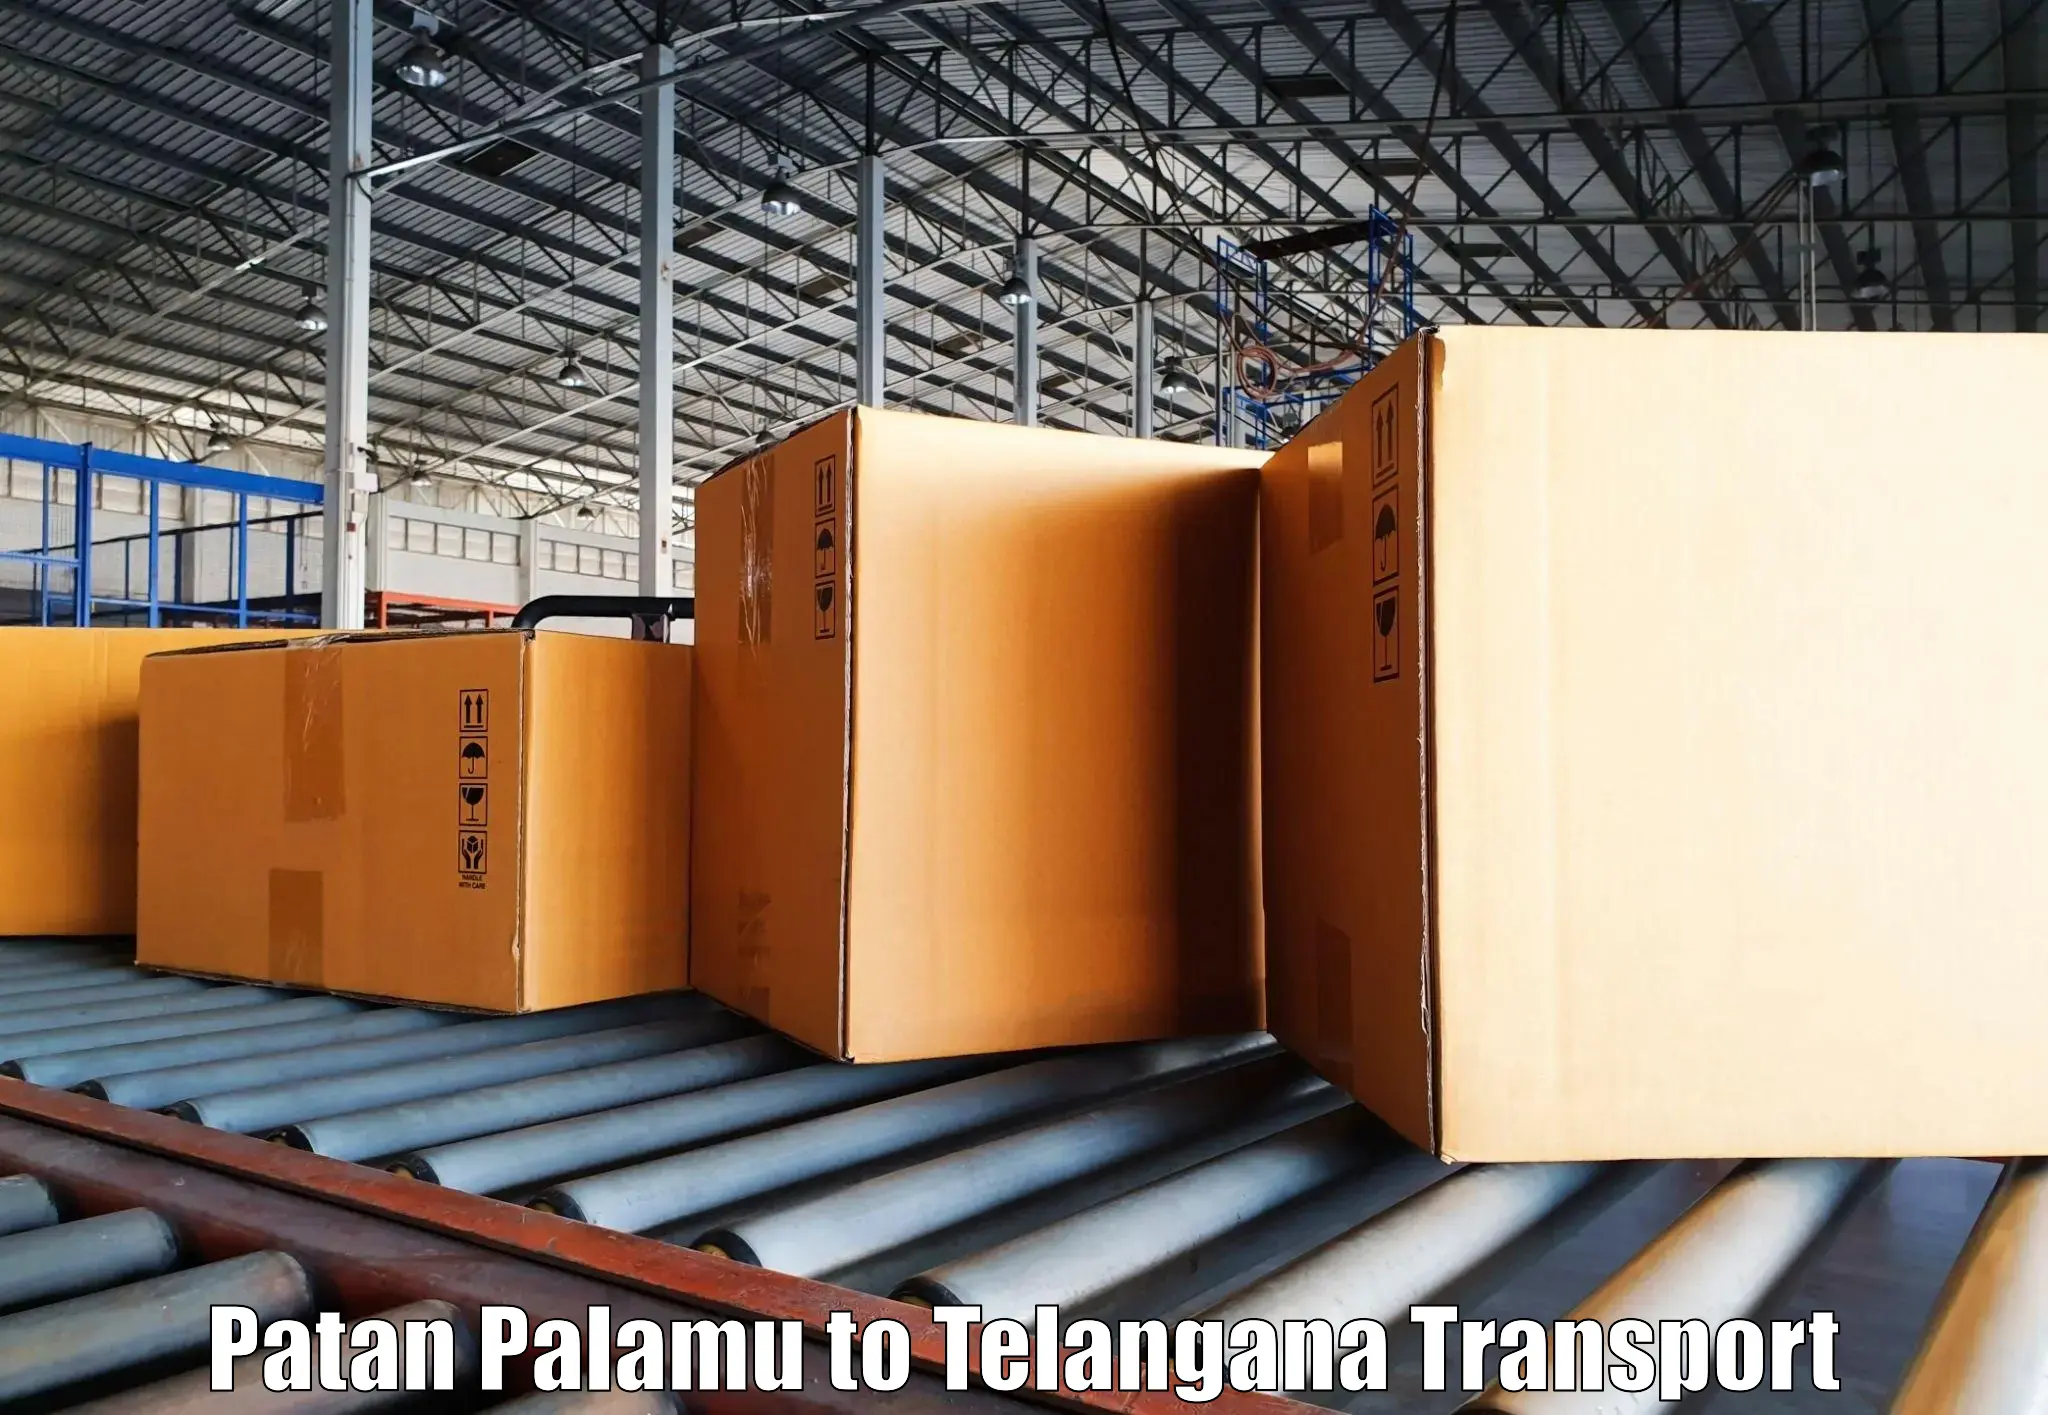 Intercity goods transport Patan Palamu to Gangadhara